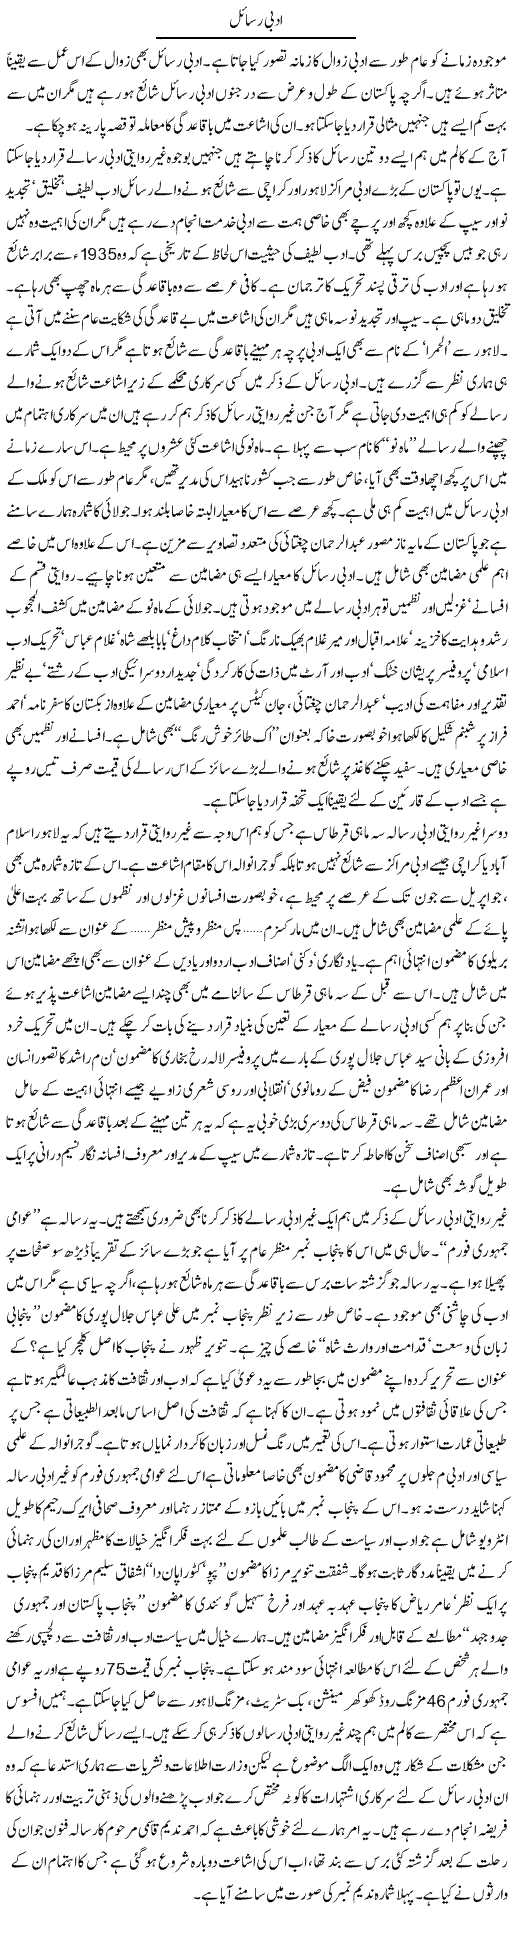 Adbi Rasail Express Column Hameed Akhtar 6 August 2010